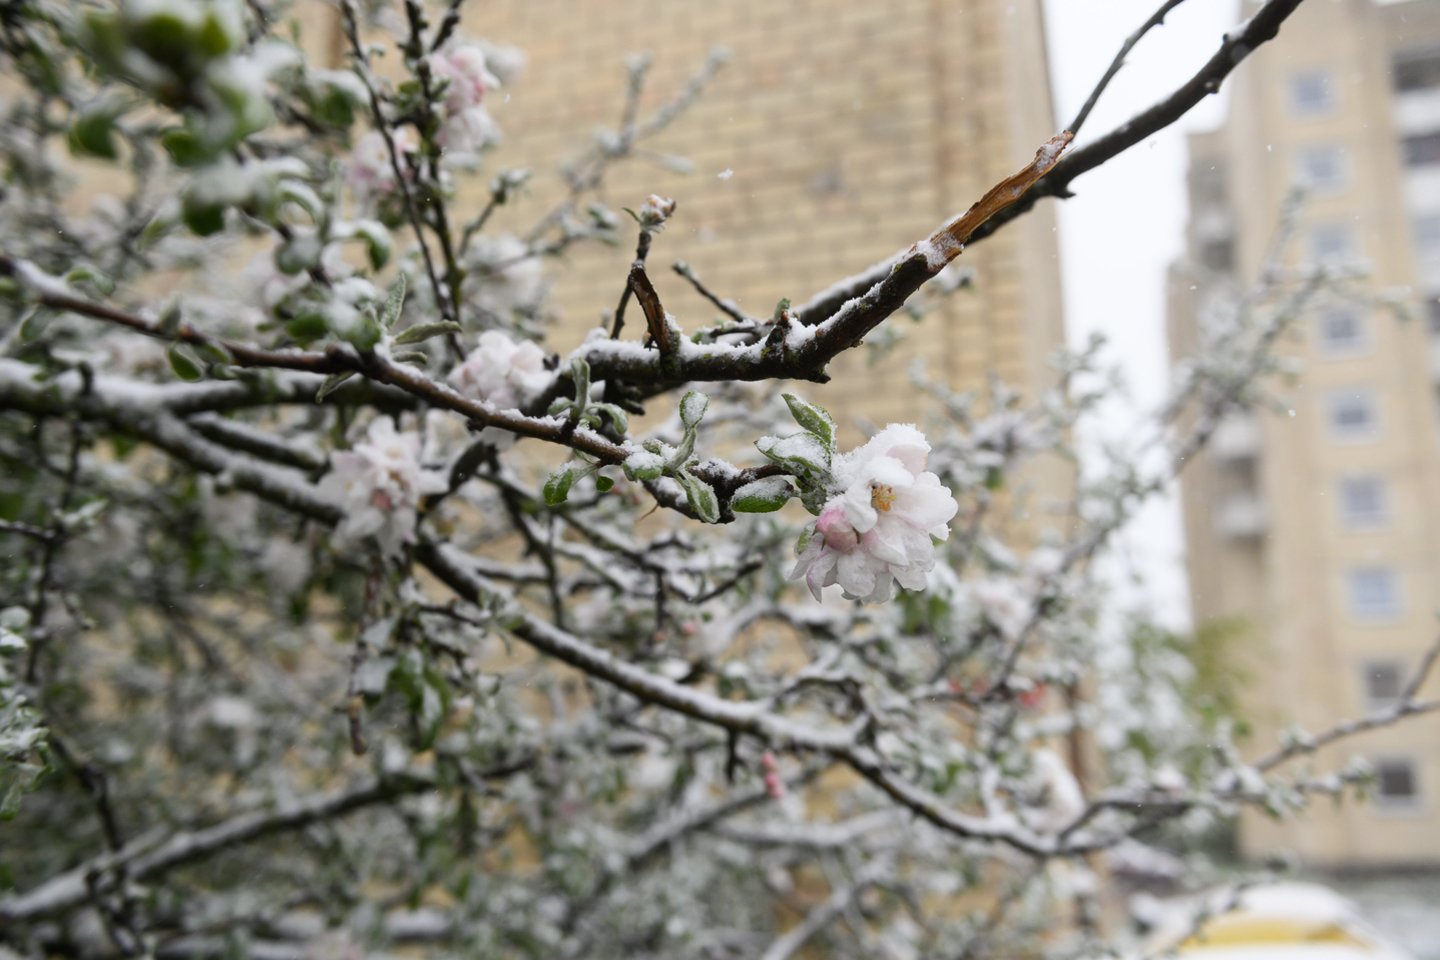 Pro langą pamatytas sniegas šįryt vienus nustebino, kitus išgąsdino – sniegas užklojo žydinčias obelis, vyšnias, paslėpė terasose ir kiemuose susodintas gėlės.<br>V.Skaraičio nuotr.